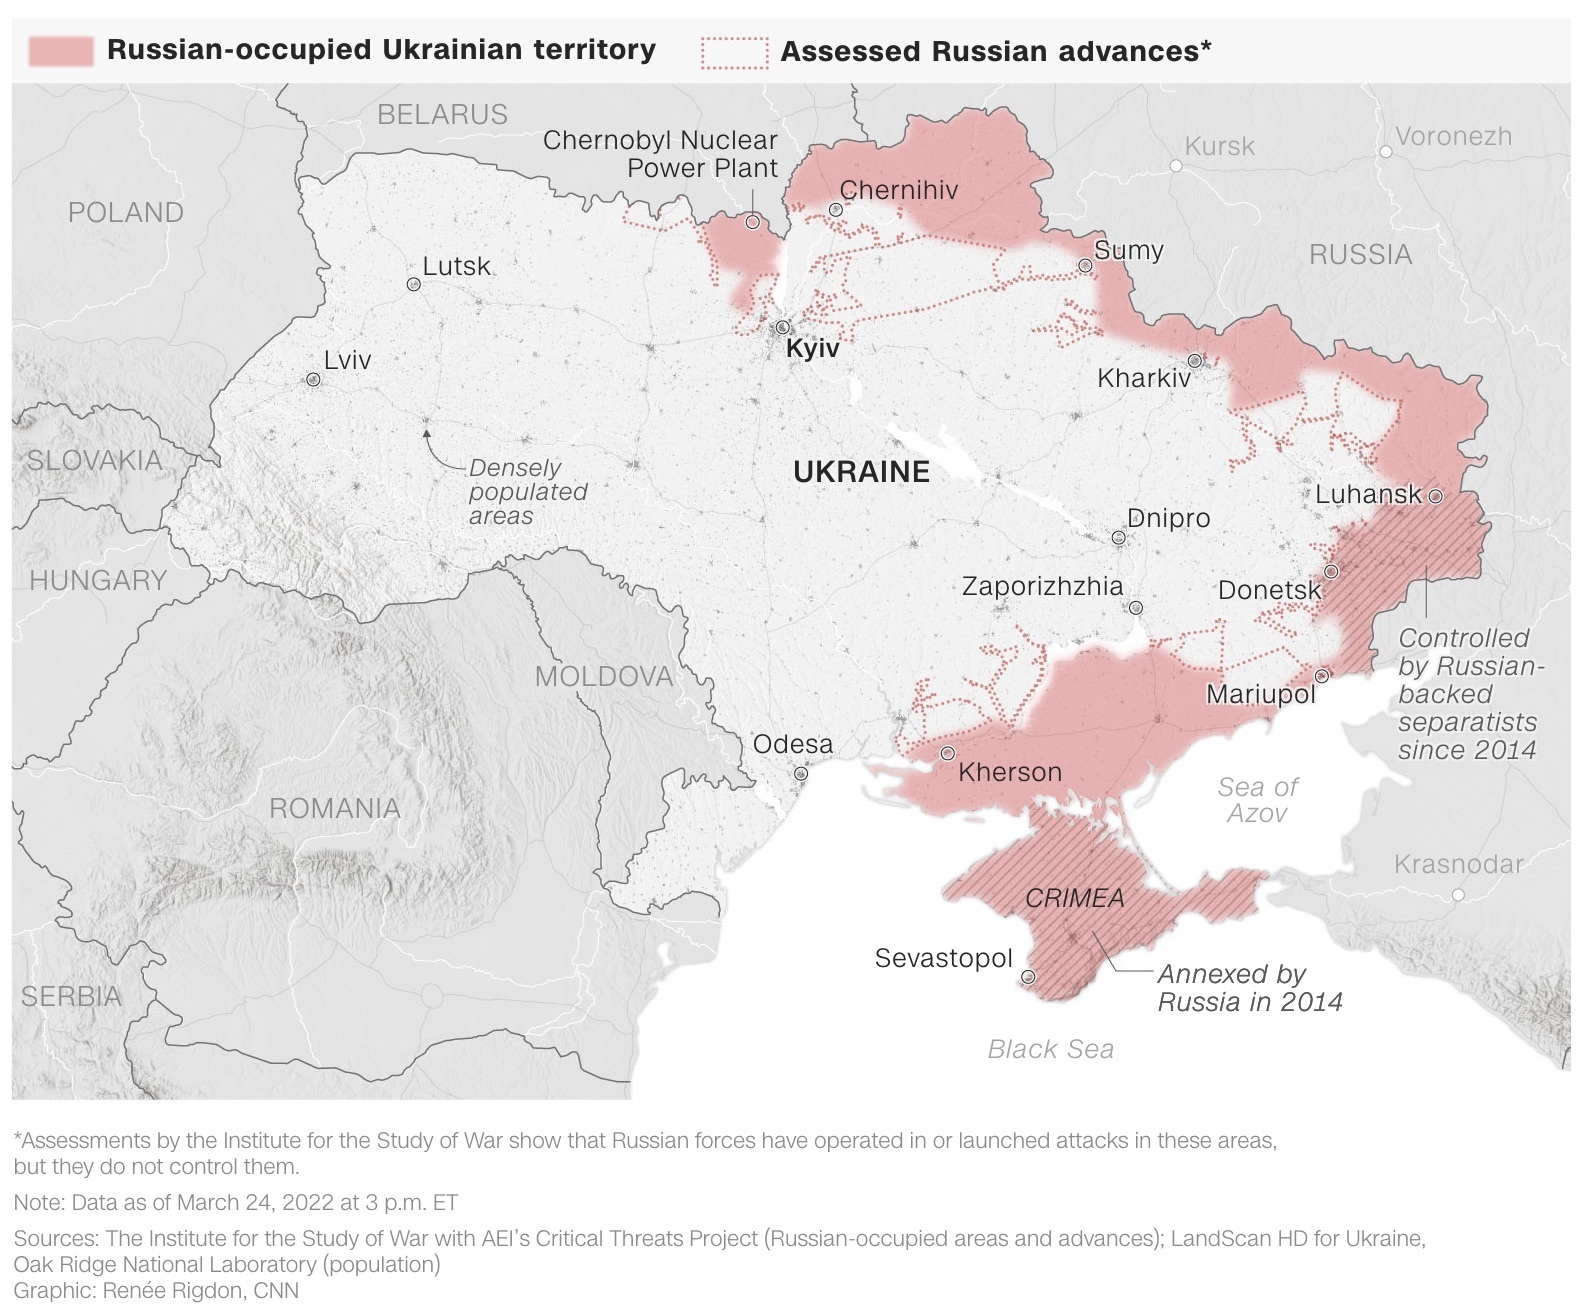 Le Nazioni Unite affermano di avere “informazioni crescenti” che confermano l’esistenza di fosse comuni a Mariupol